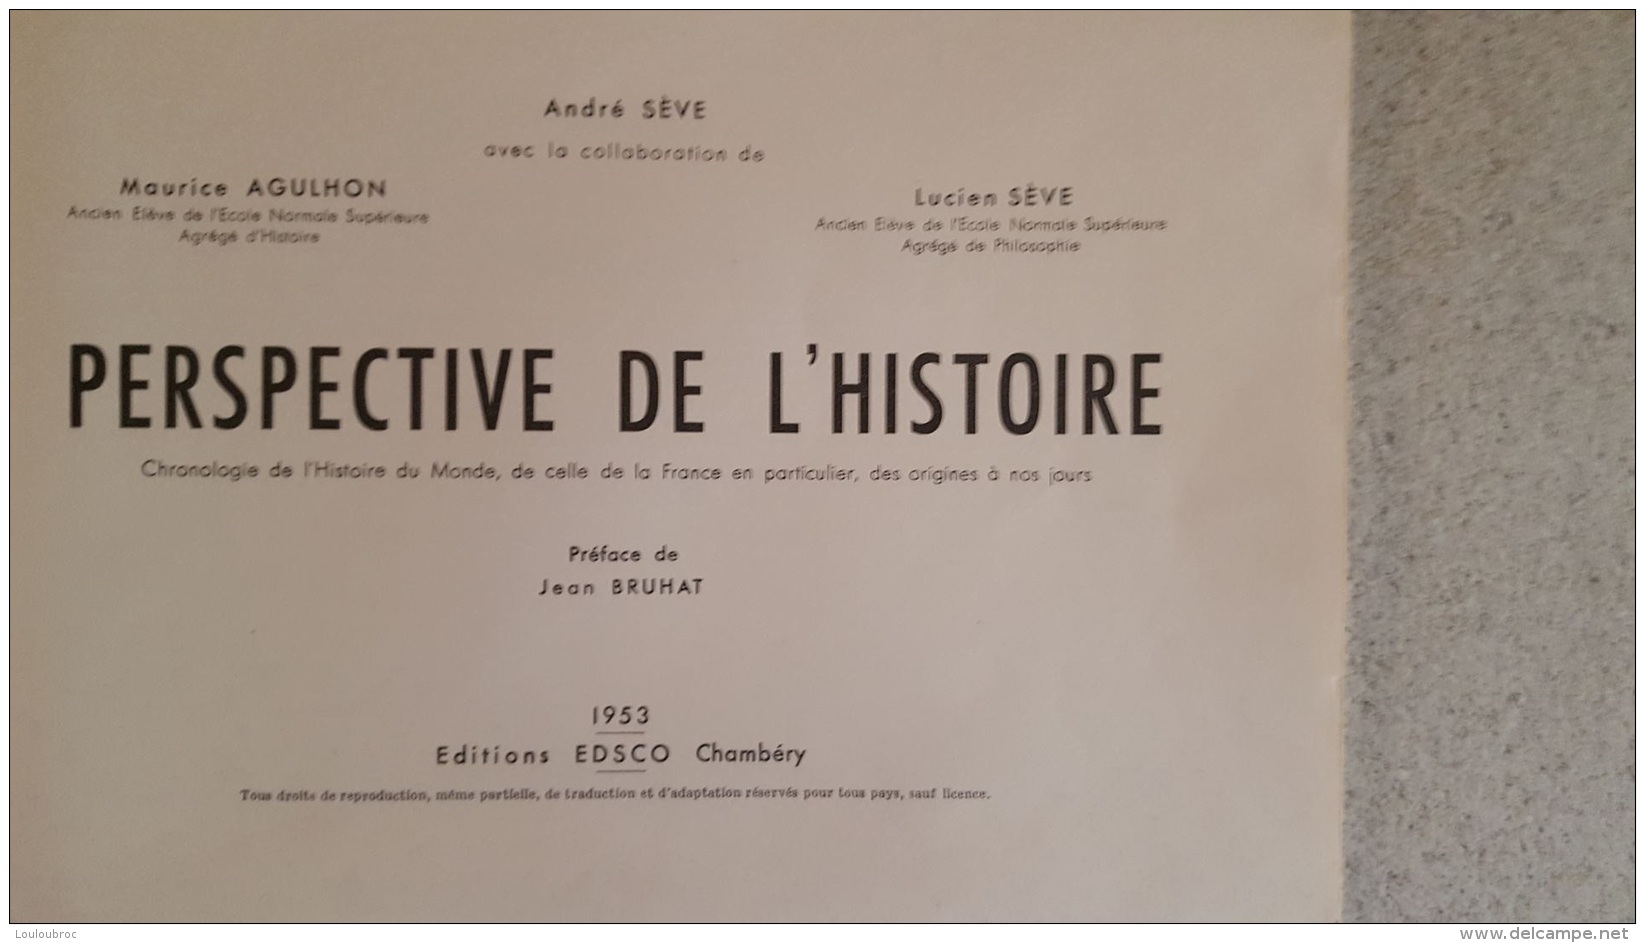 PERSPECTIVE DE L'HISTOIRE EN 11 FASCICULES  DE ANDRE SEVE MAURICE AGULHON ET LUCIEN SEVE 1953  EDITION EDSCO - Histoire